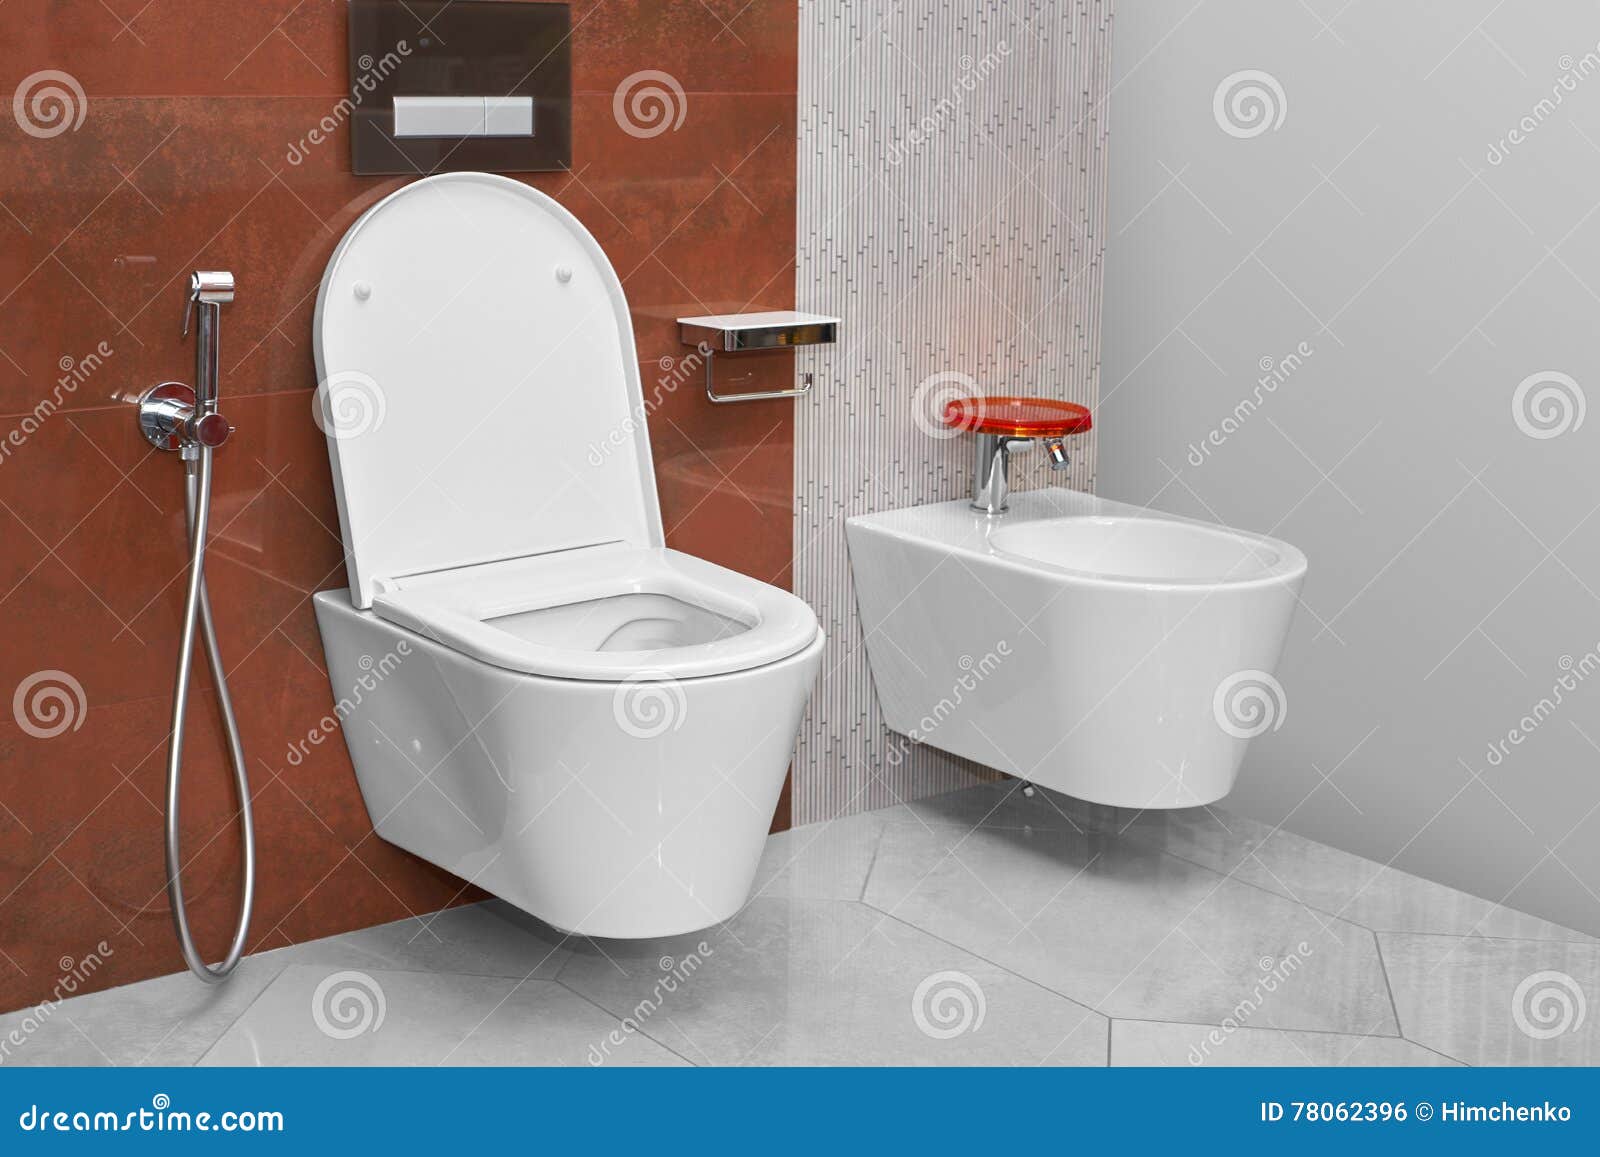 Toilette Et Bidet Dans Une Salle De Bains Moderne Photo stock - Image du  beau, pièce: 78062396